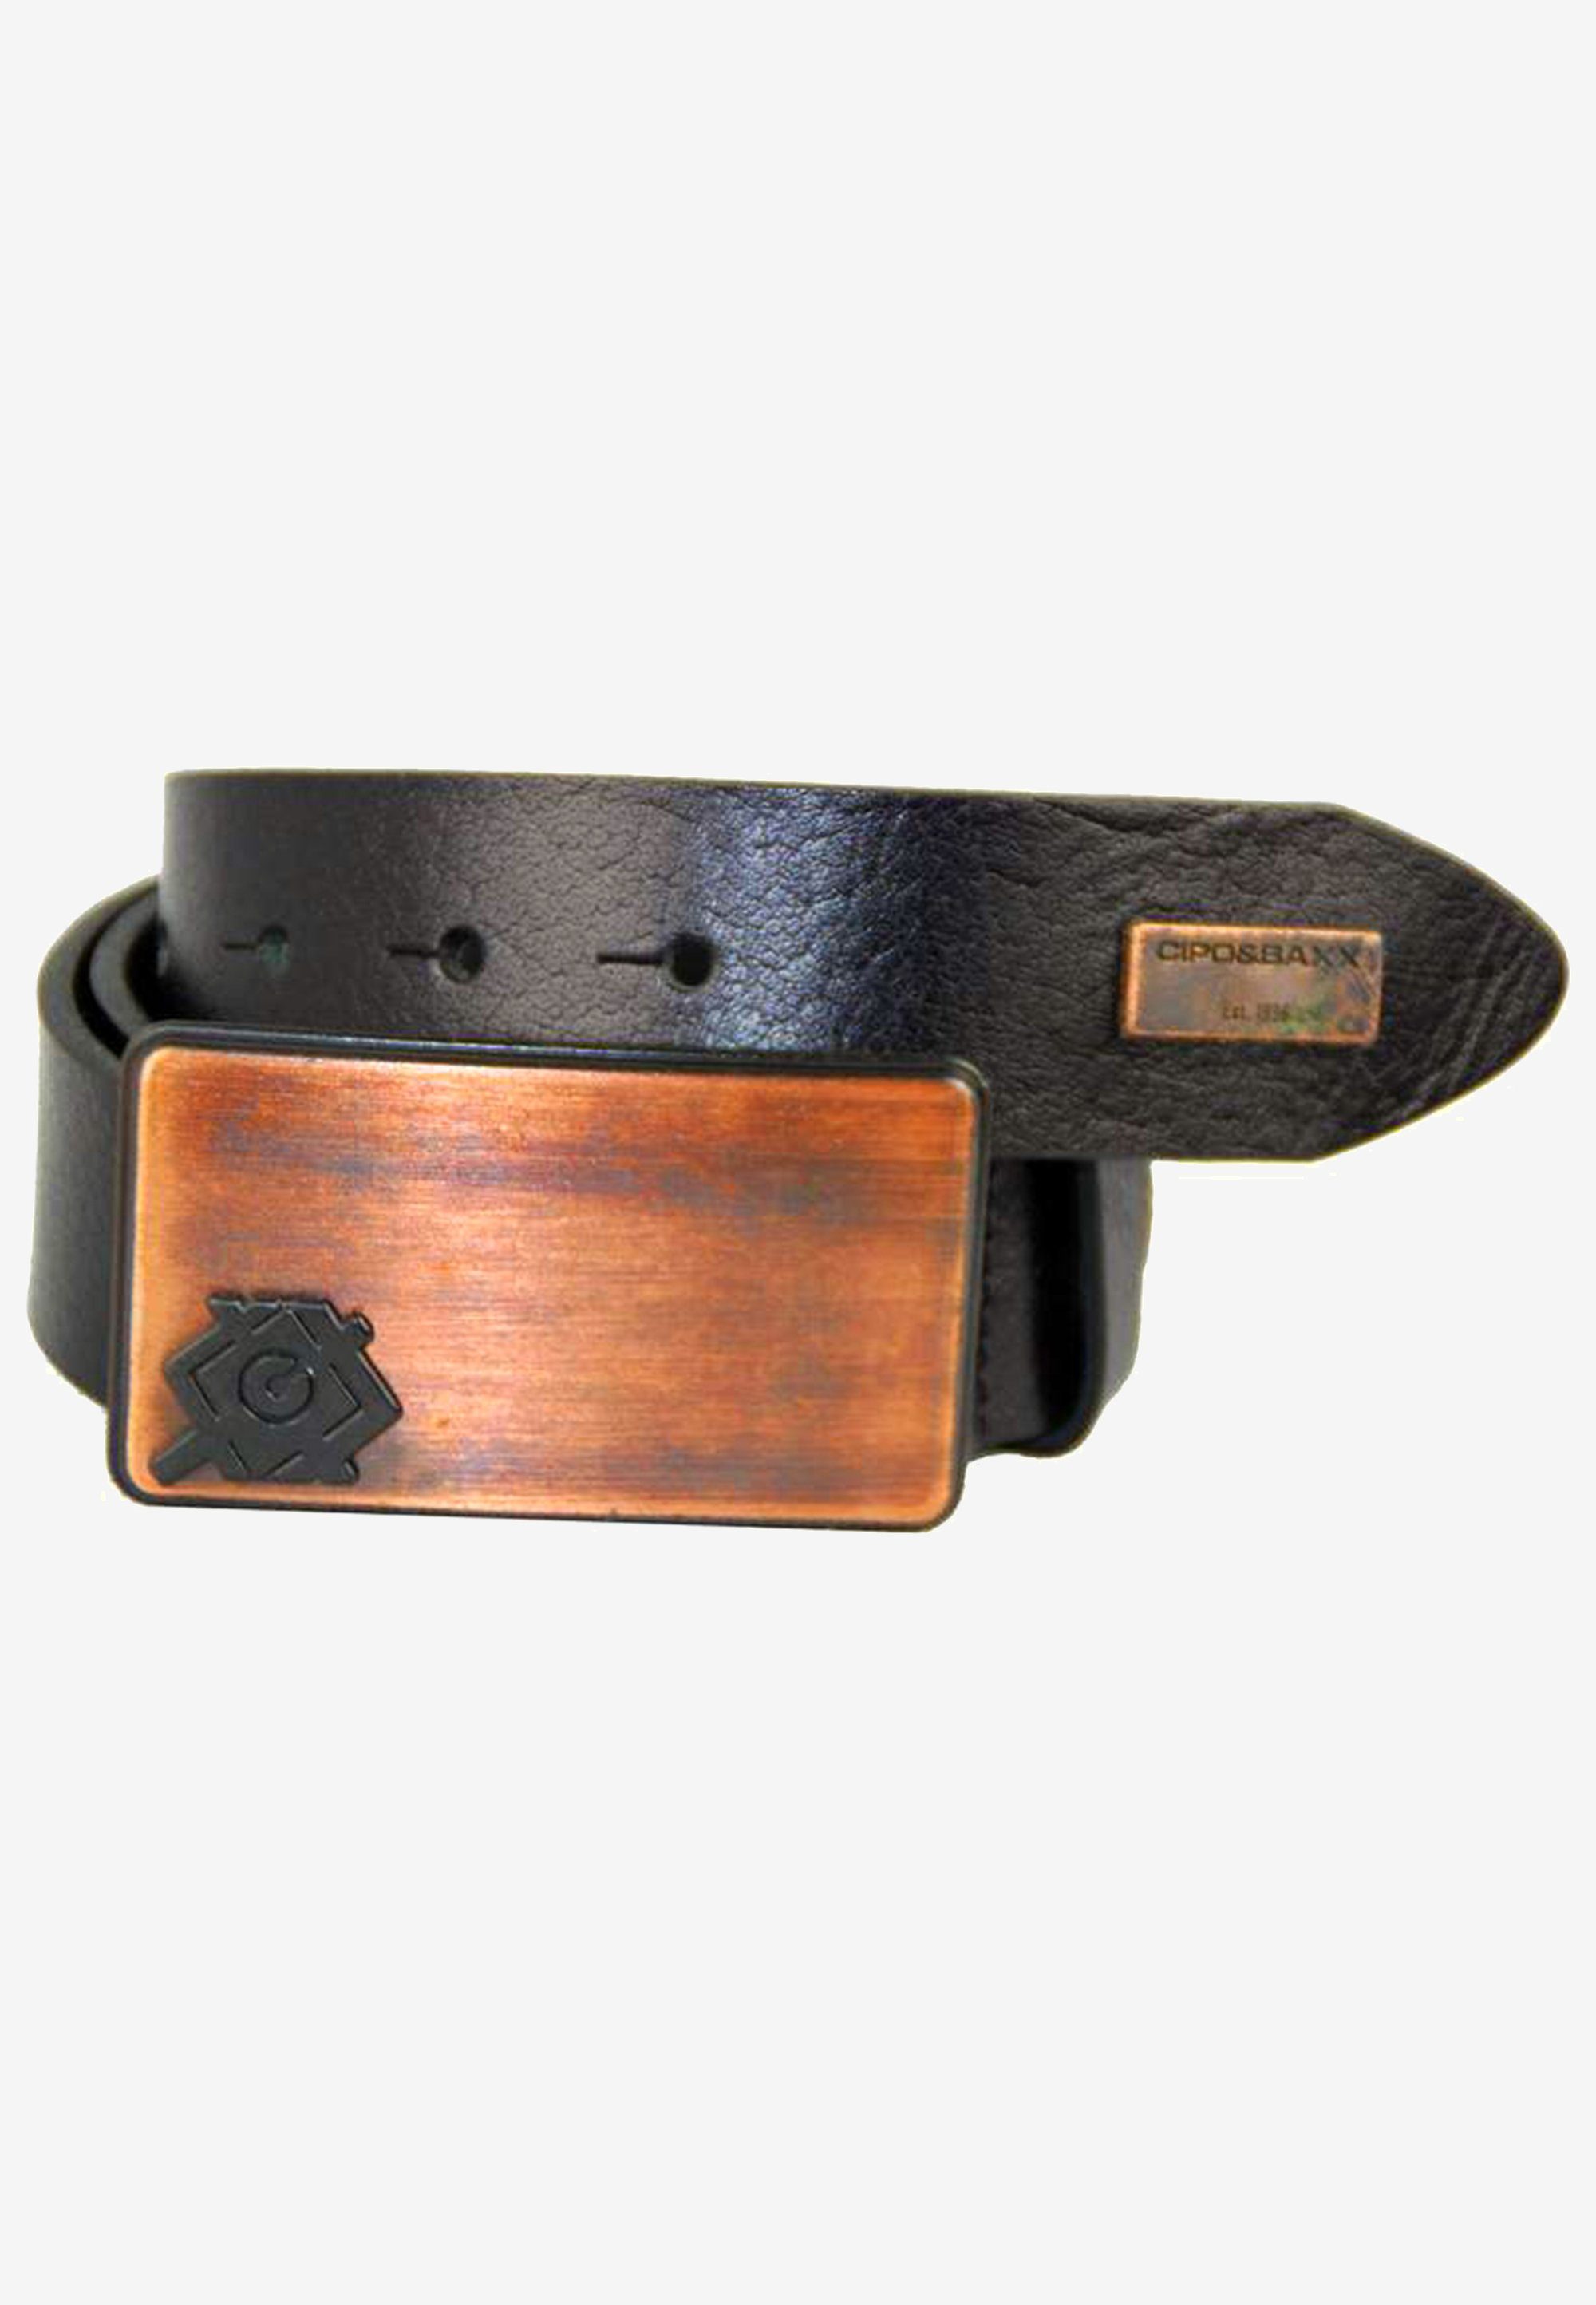 Cipo & Metallschnalle Ledergürtel stylischer schwarz mit Baxx